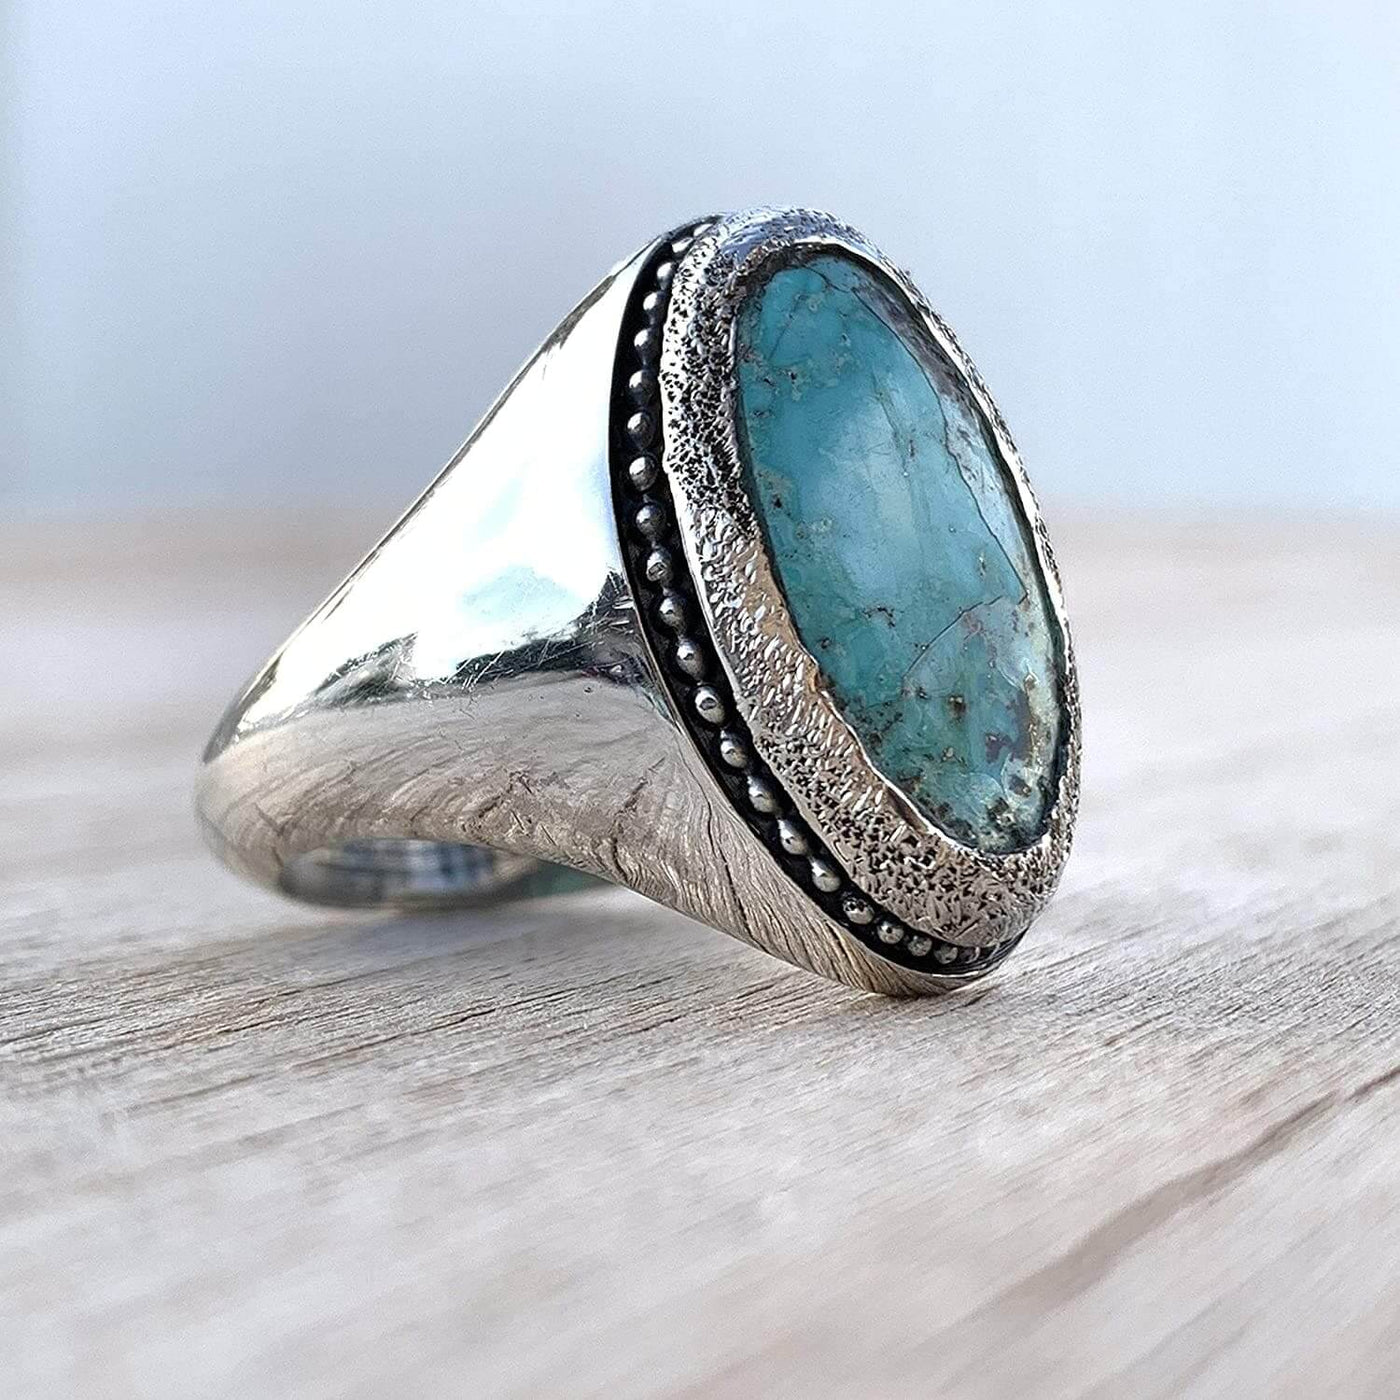 Turquoise Ring in Sterling Silver 925 & Genuine Turquoise | Neyshabur Turquoise | Feroza Stone Size 12.25 - Al Ali Gems